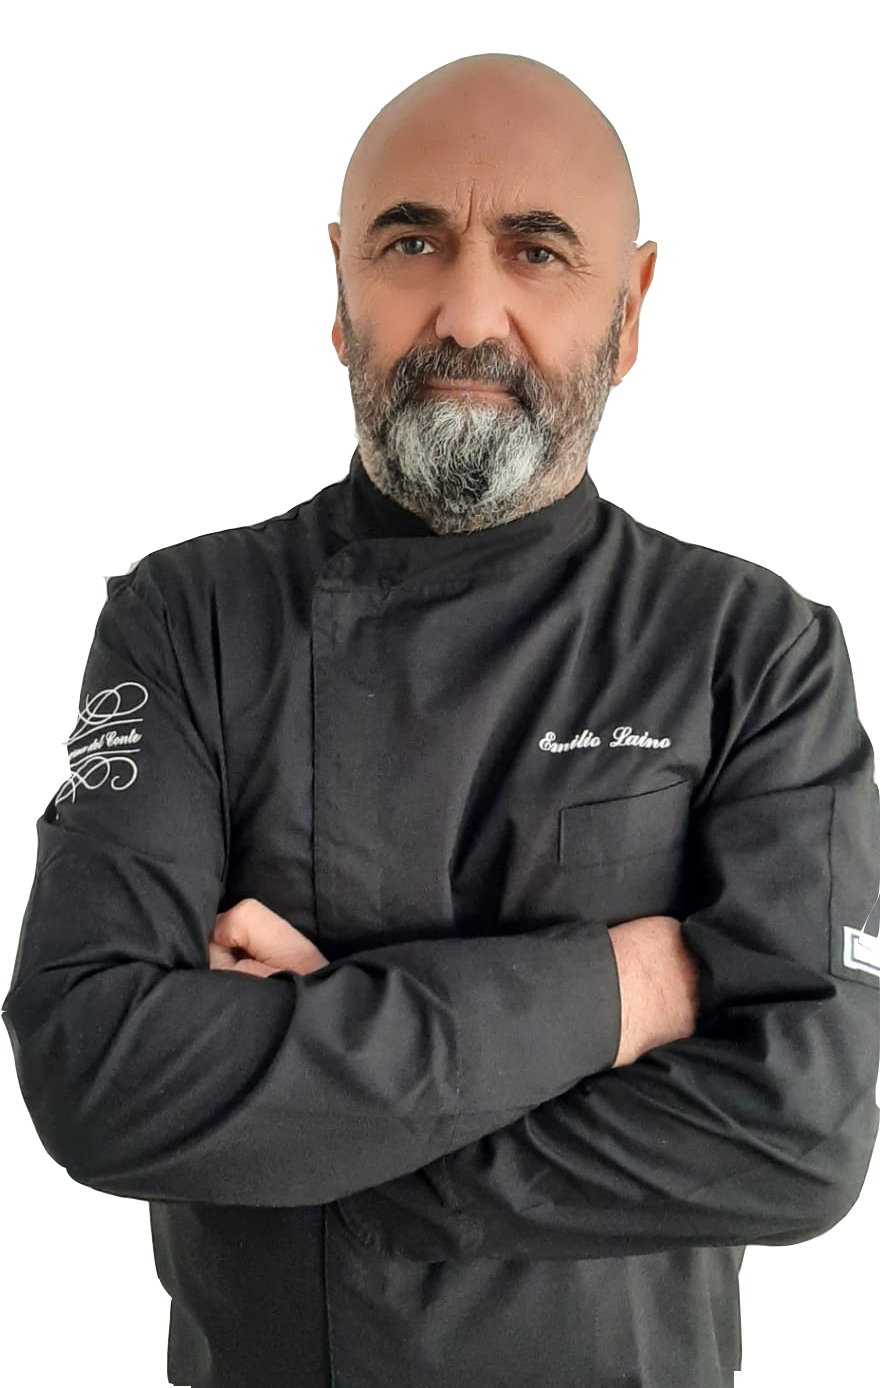 Chef Emilio Laino